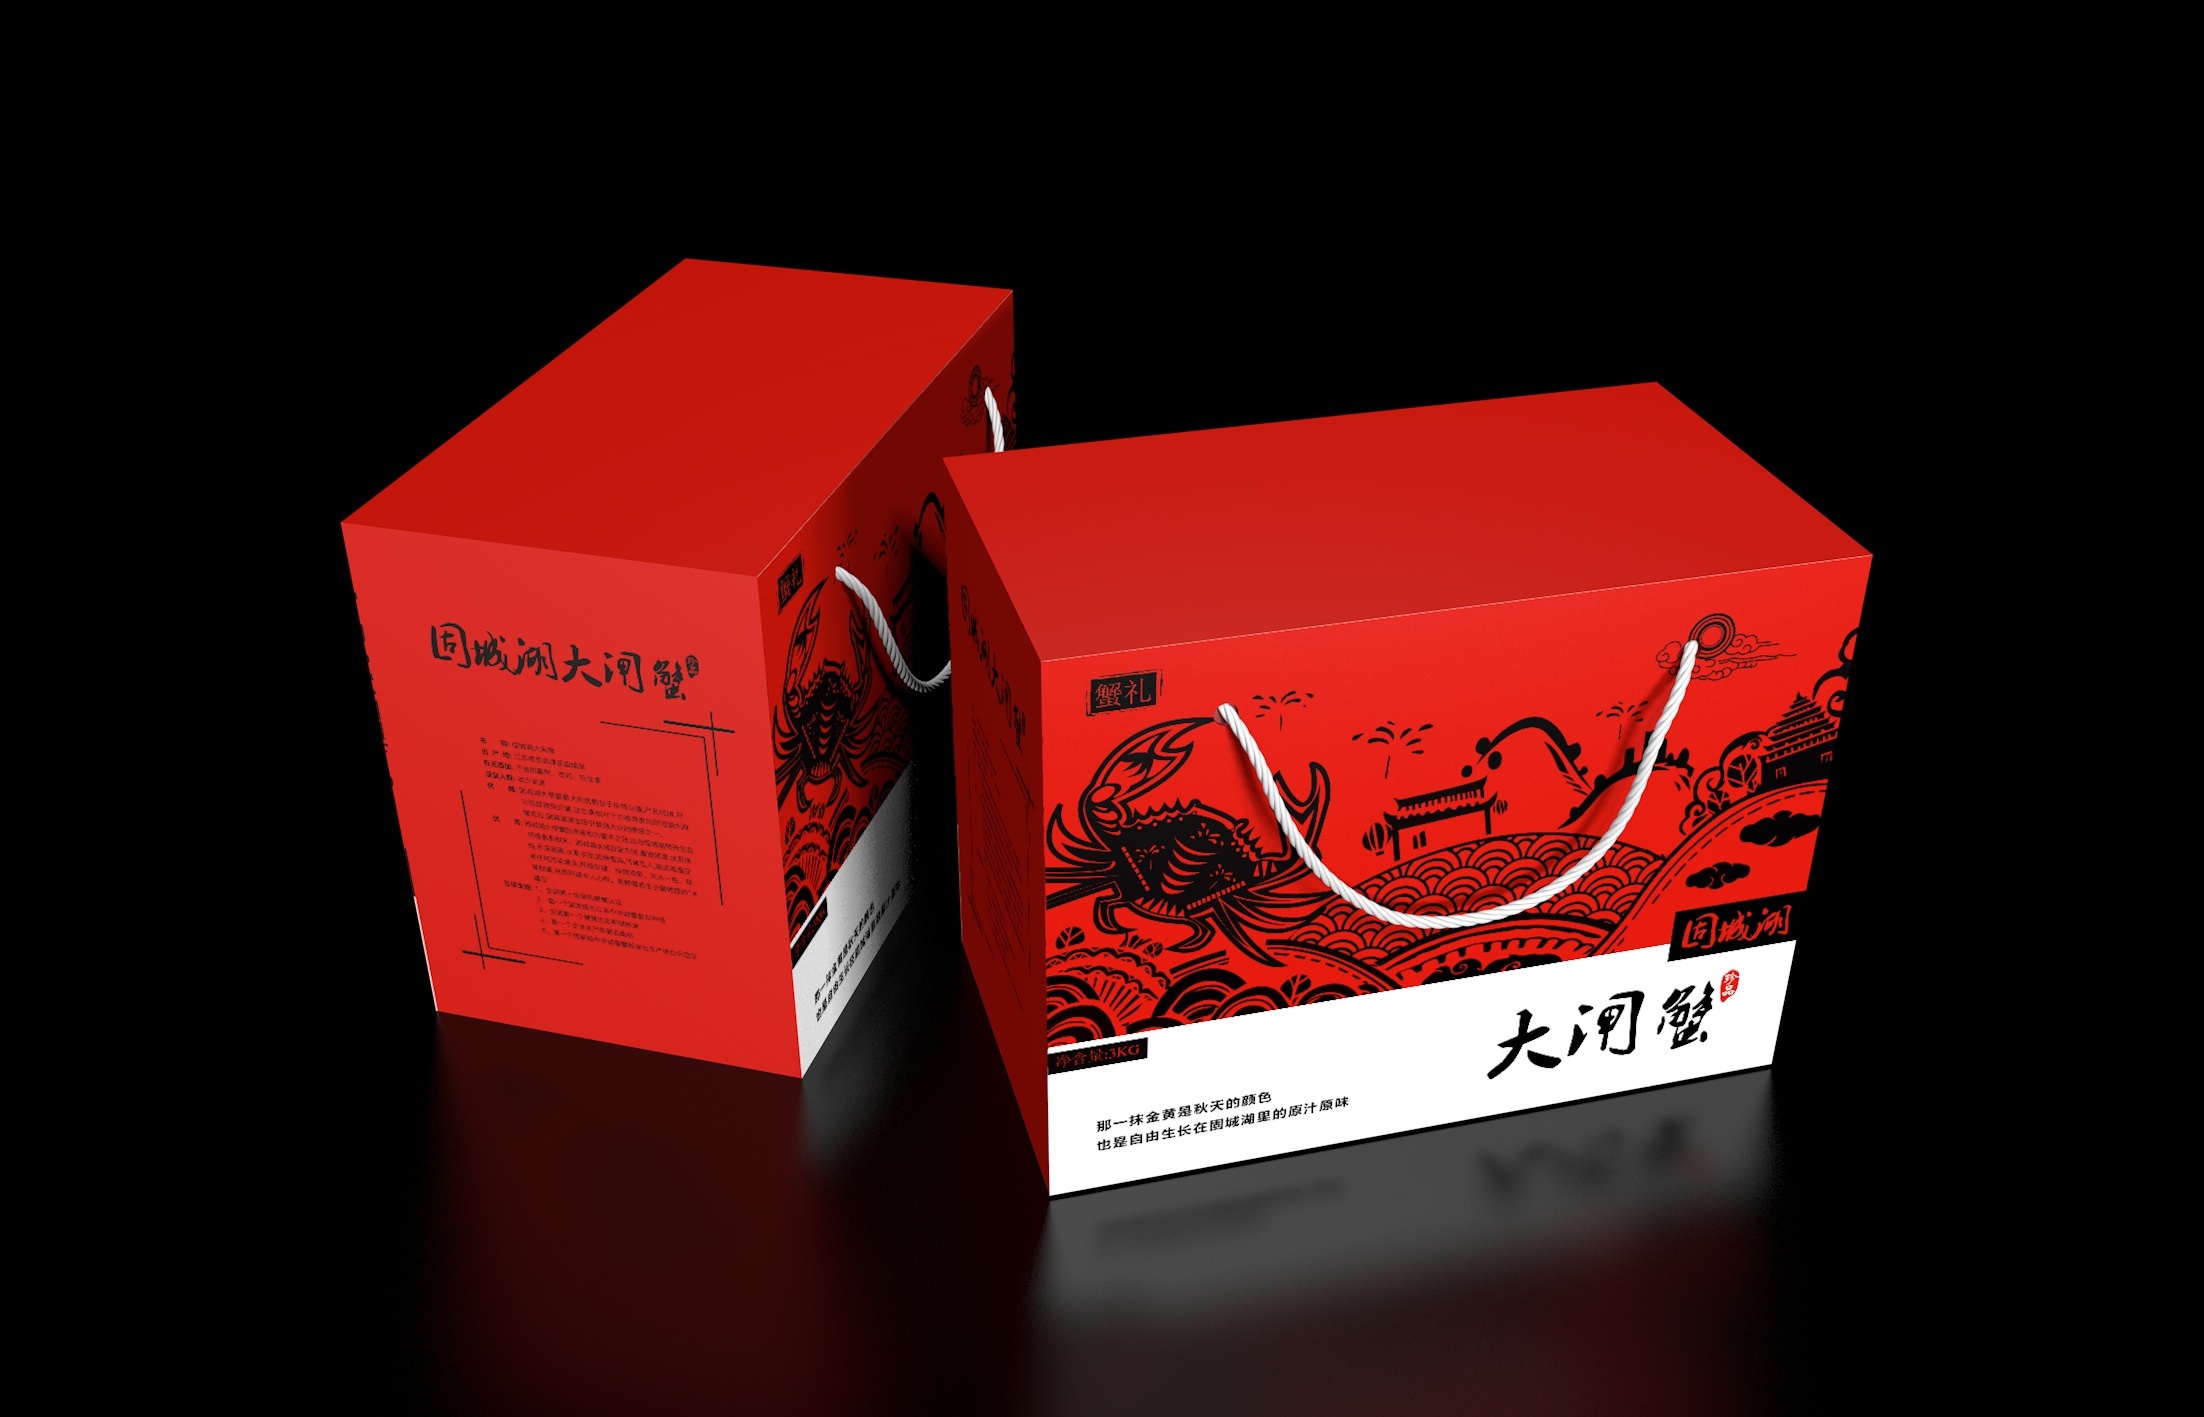 红色大闸蟹手提屋顶包装礼盒设计制作加工定制生产厂家